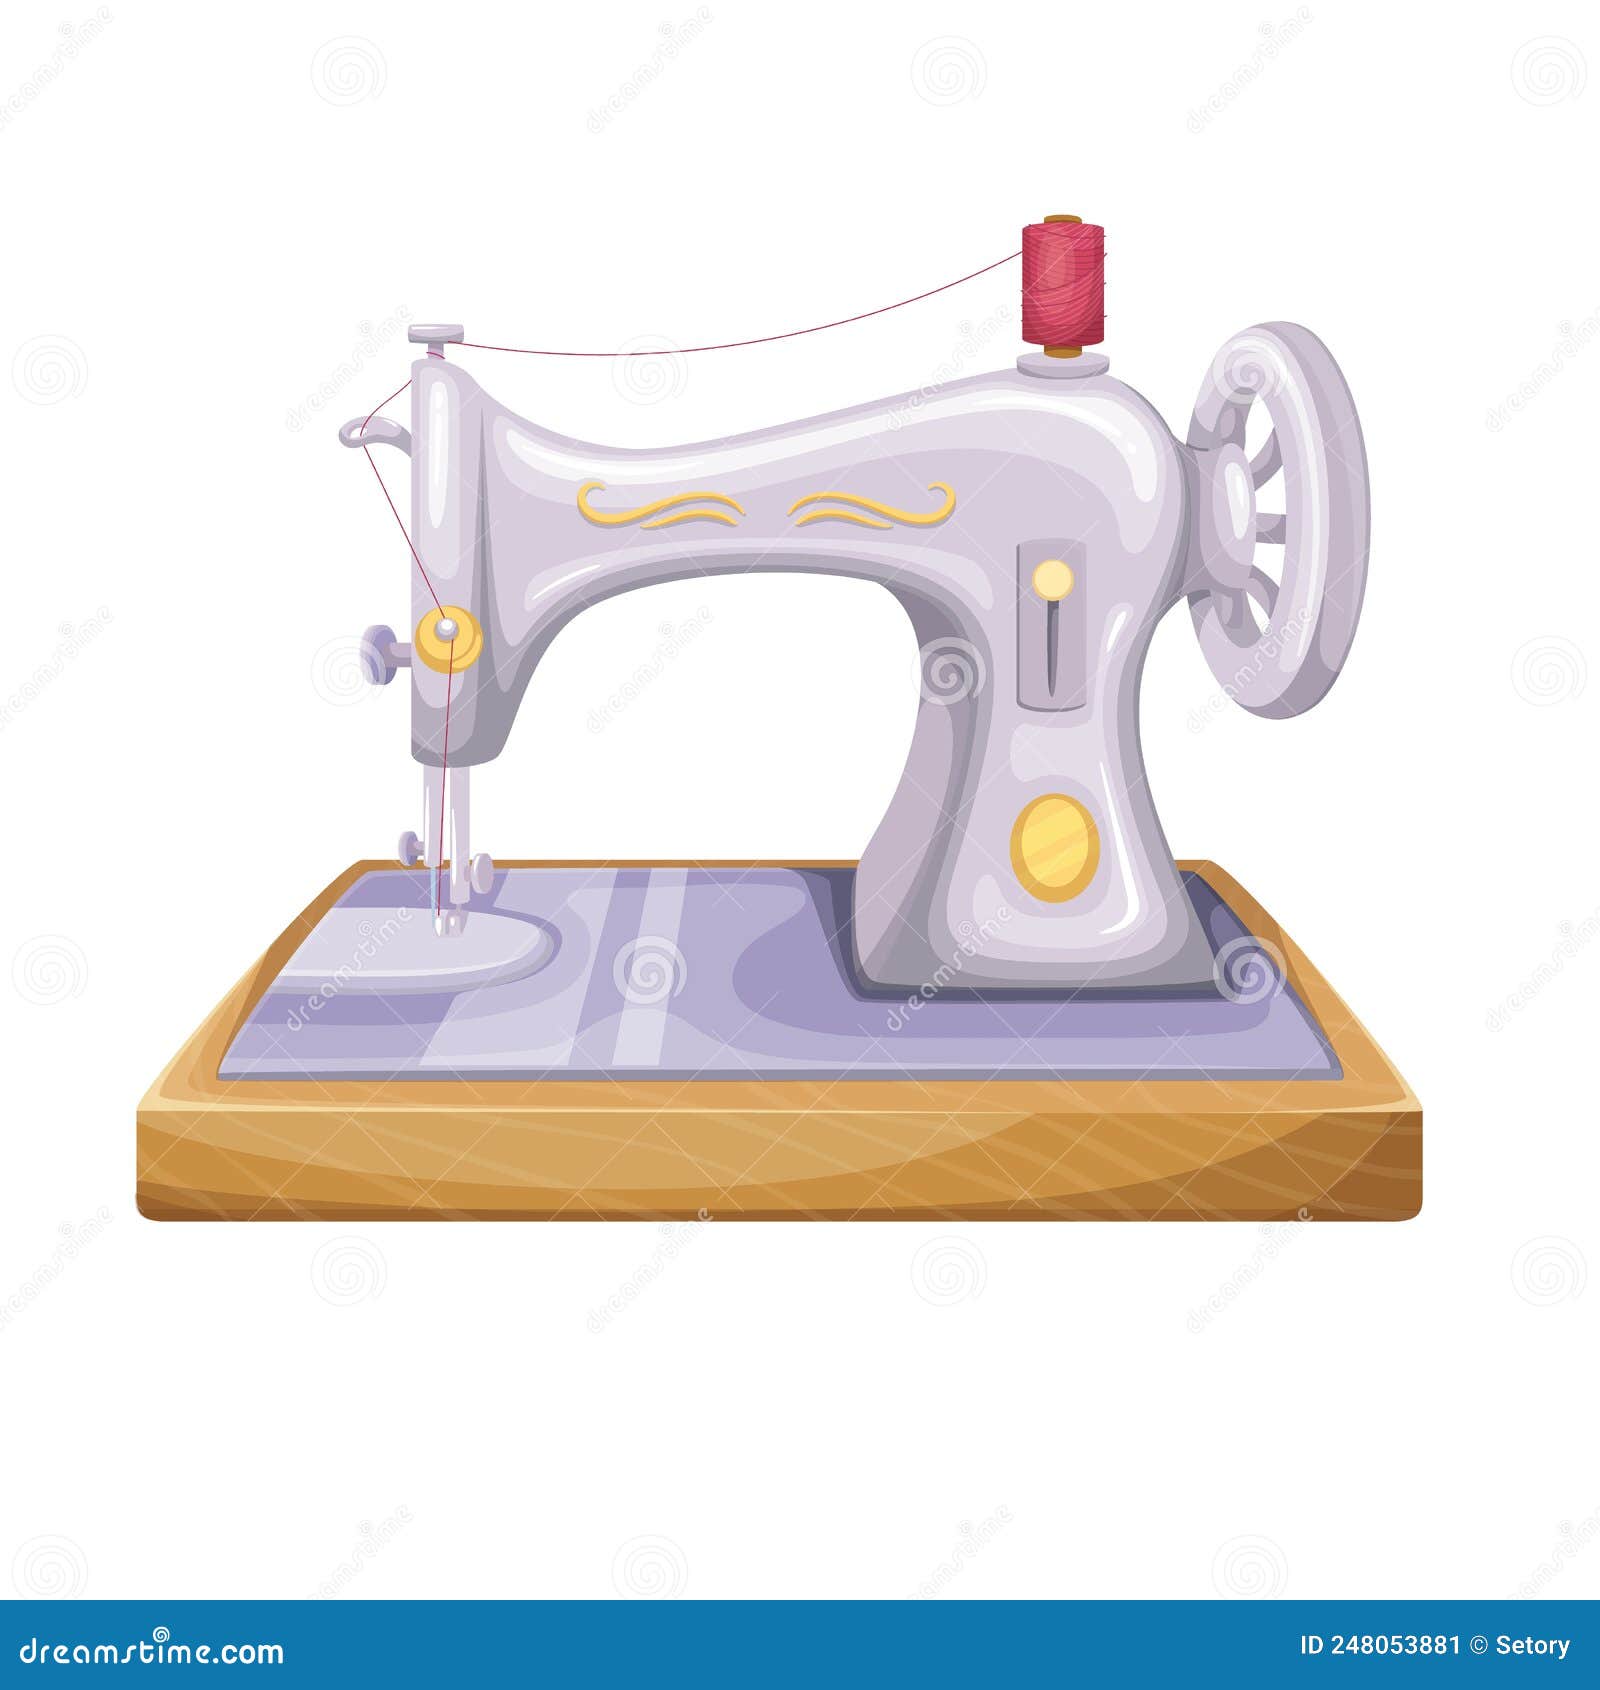 Ilustración de dibujos animados de maquina de coser